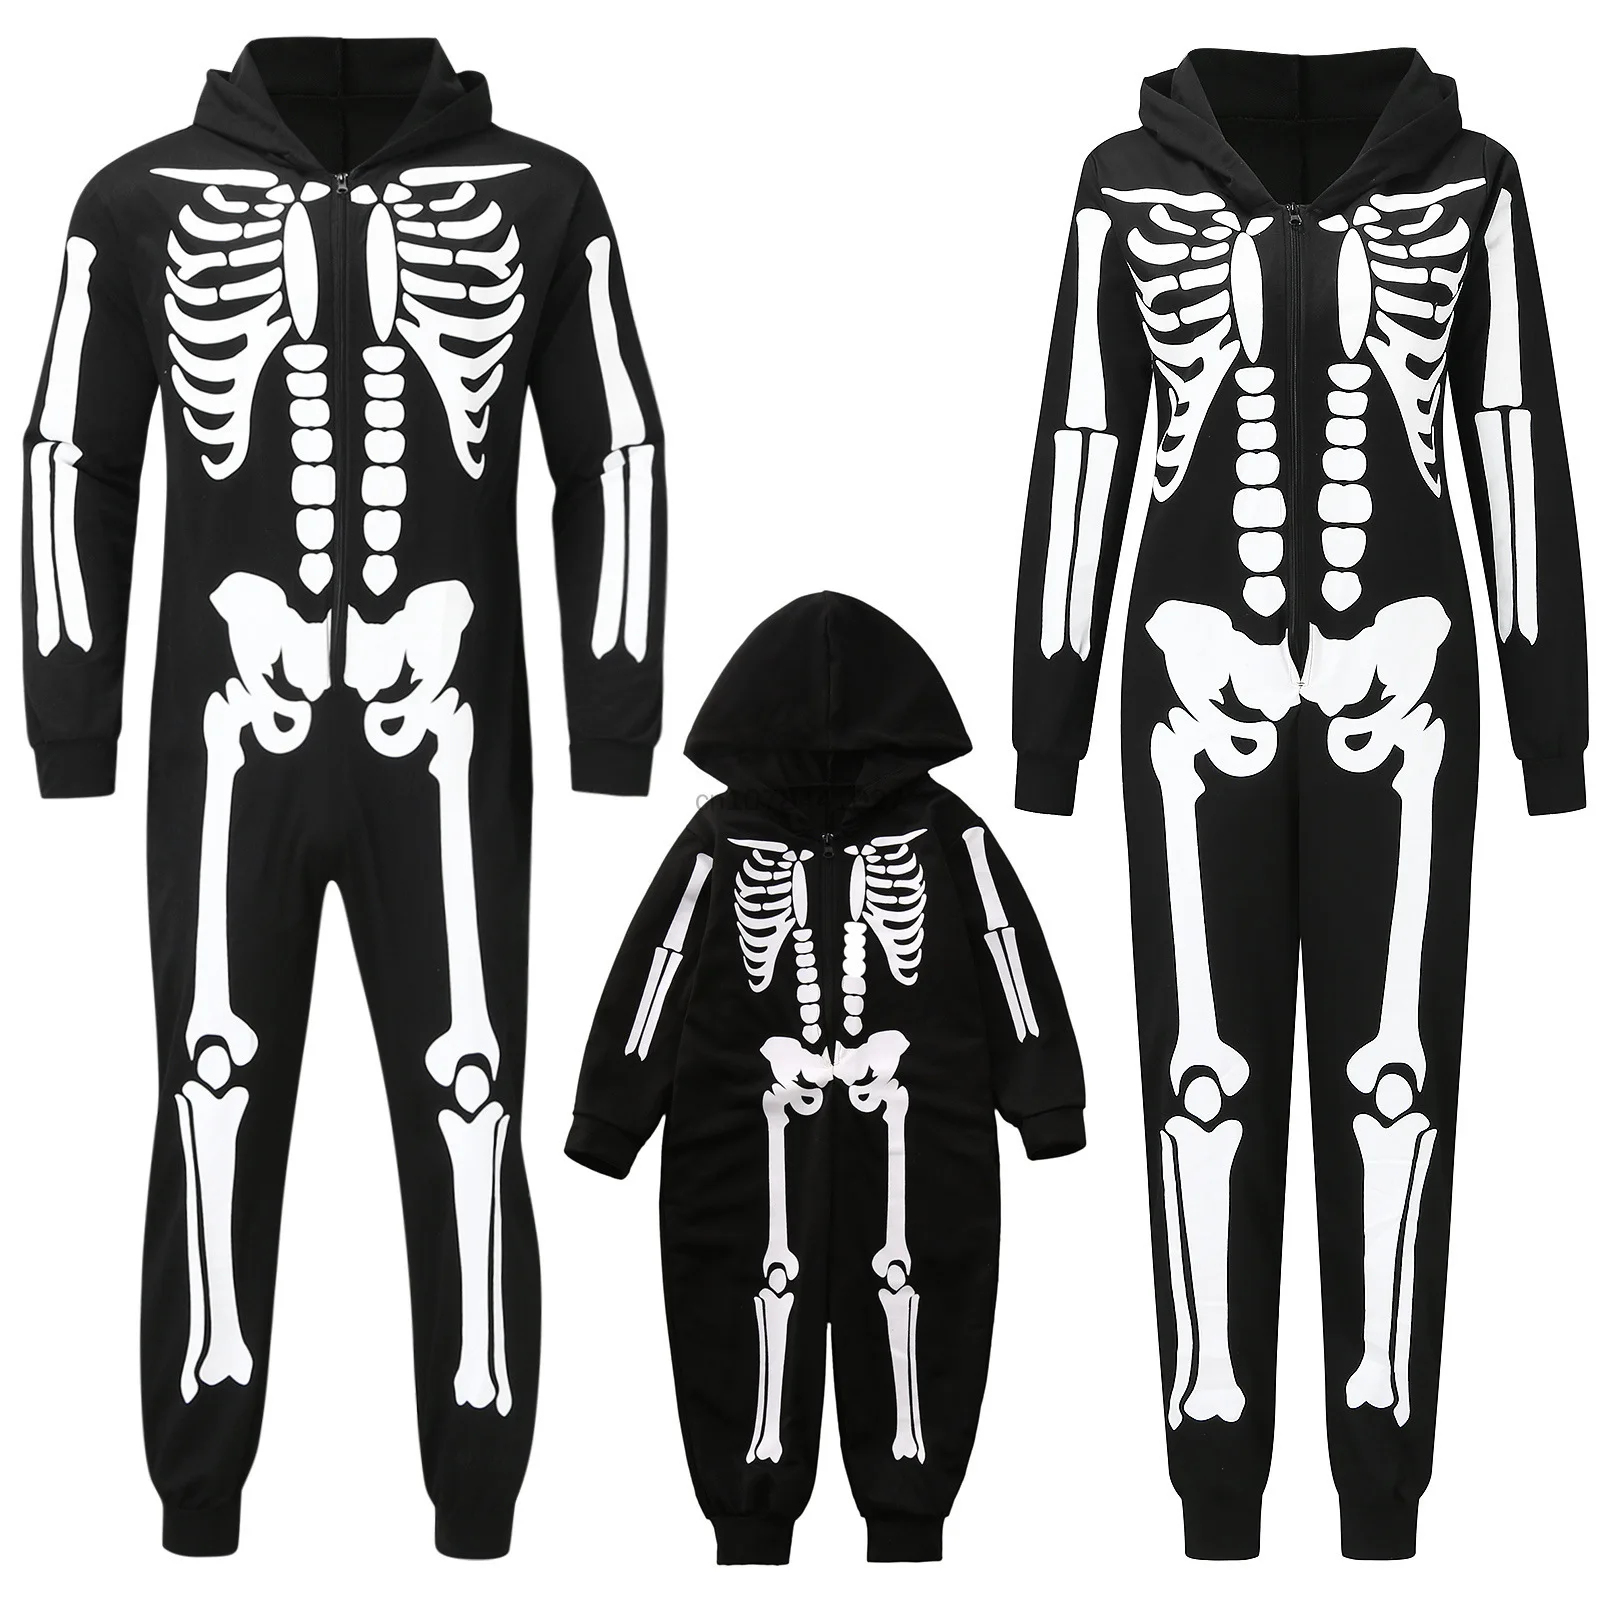 

Карнавальный костюм на Хэллоуин, семейный костюм, комбинезон со скелетом для косплея, комбинезон на молнии с капюшоном для взрослых, детей, женщин, мужчин, мальчиков и девочек